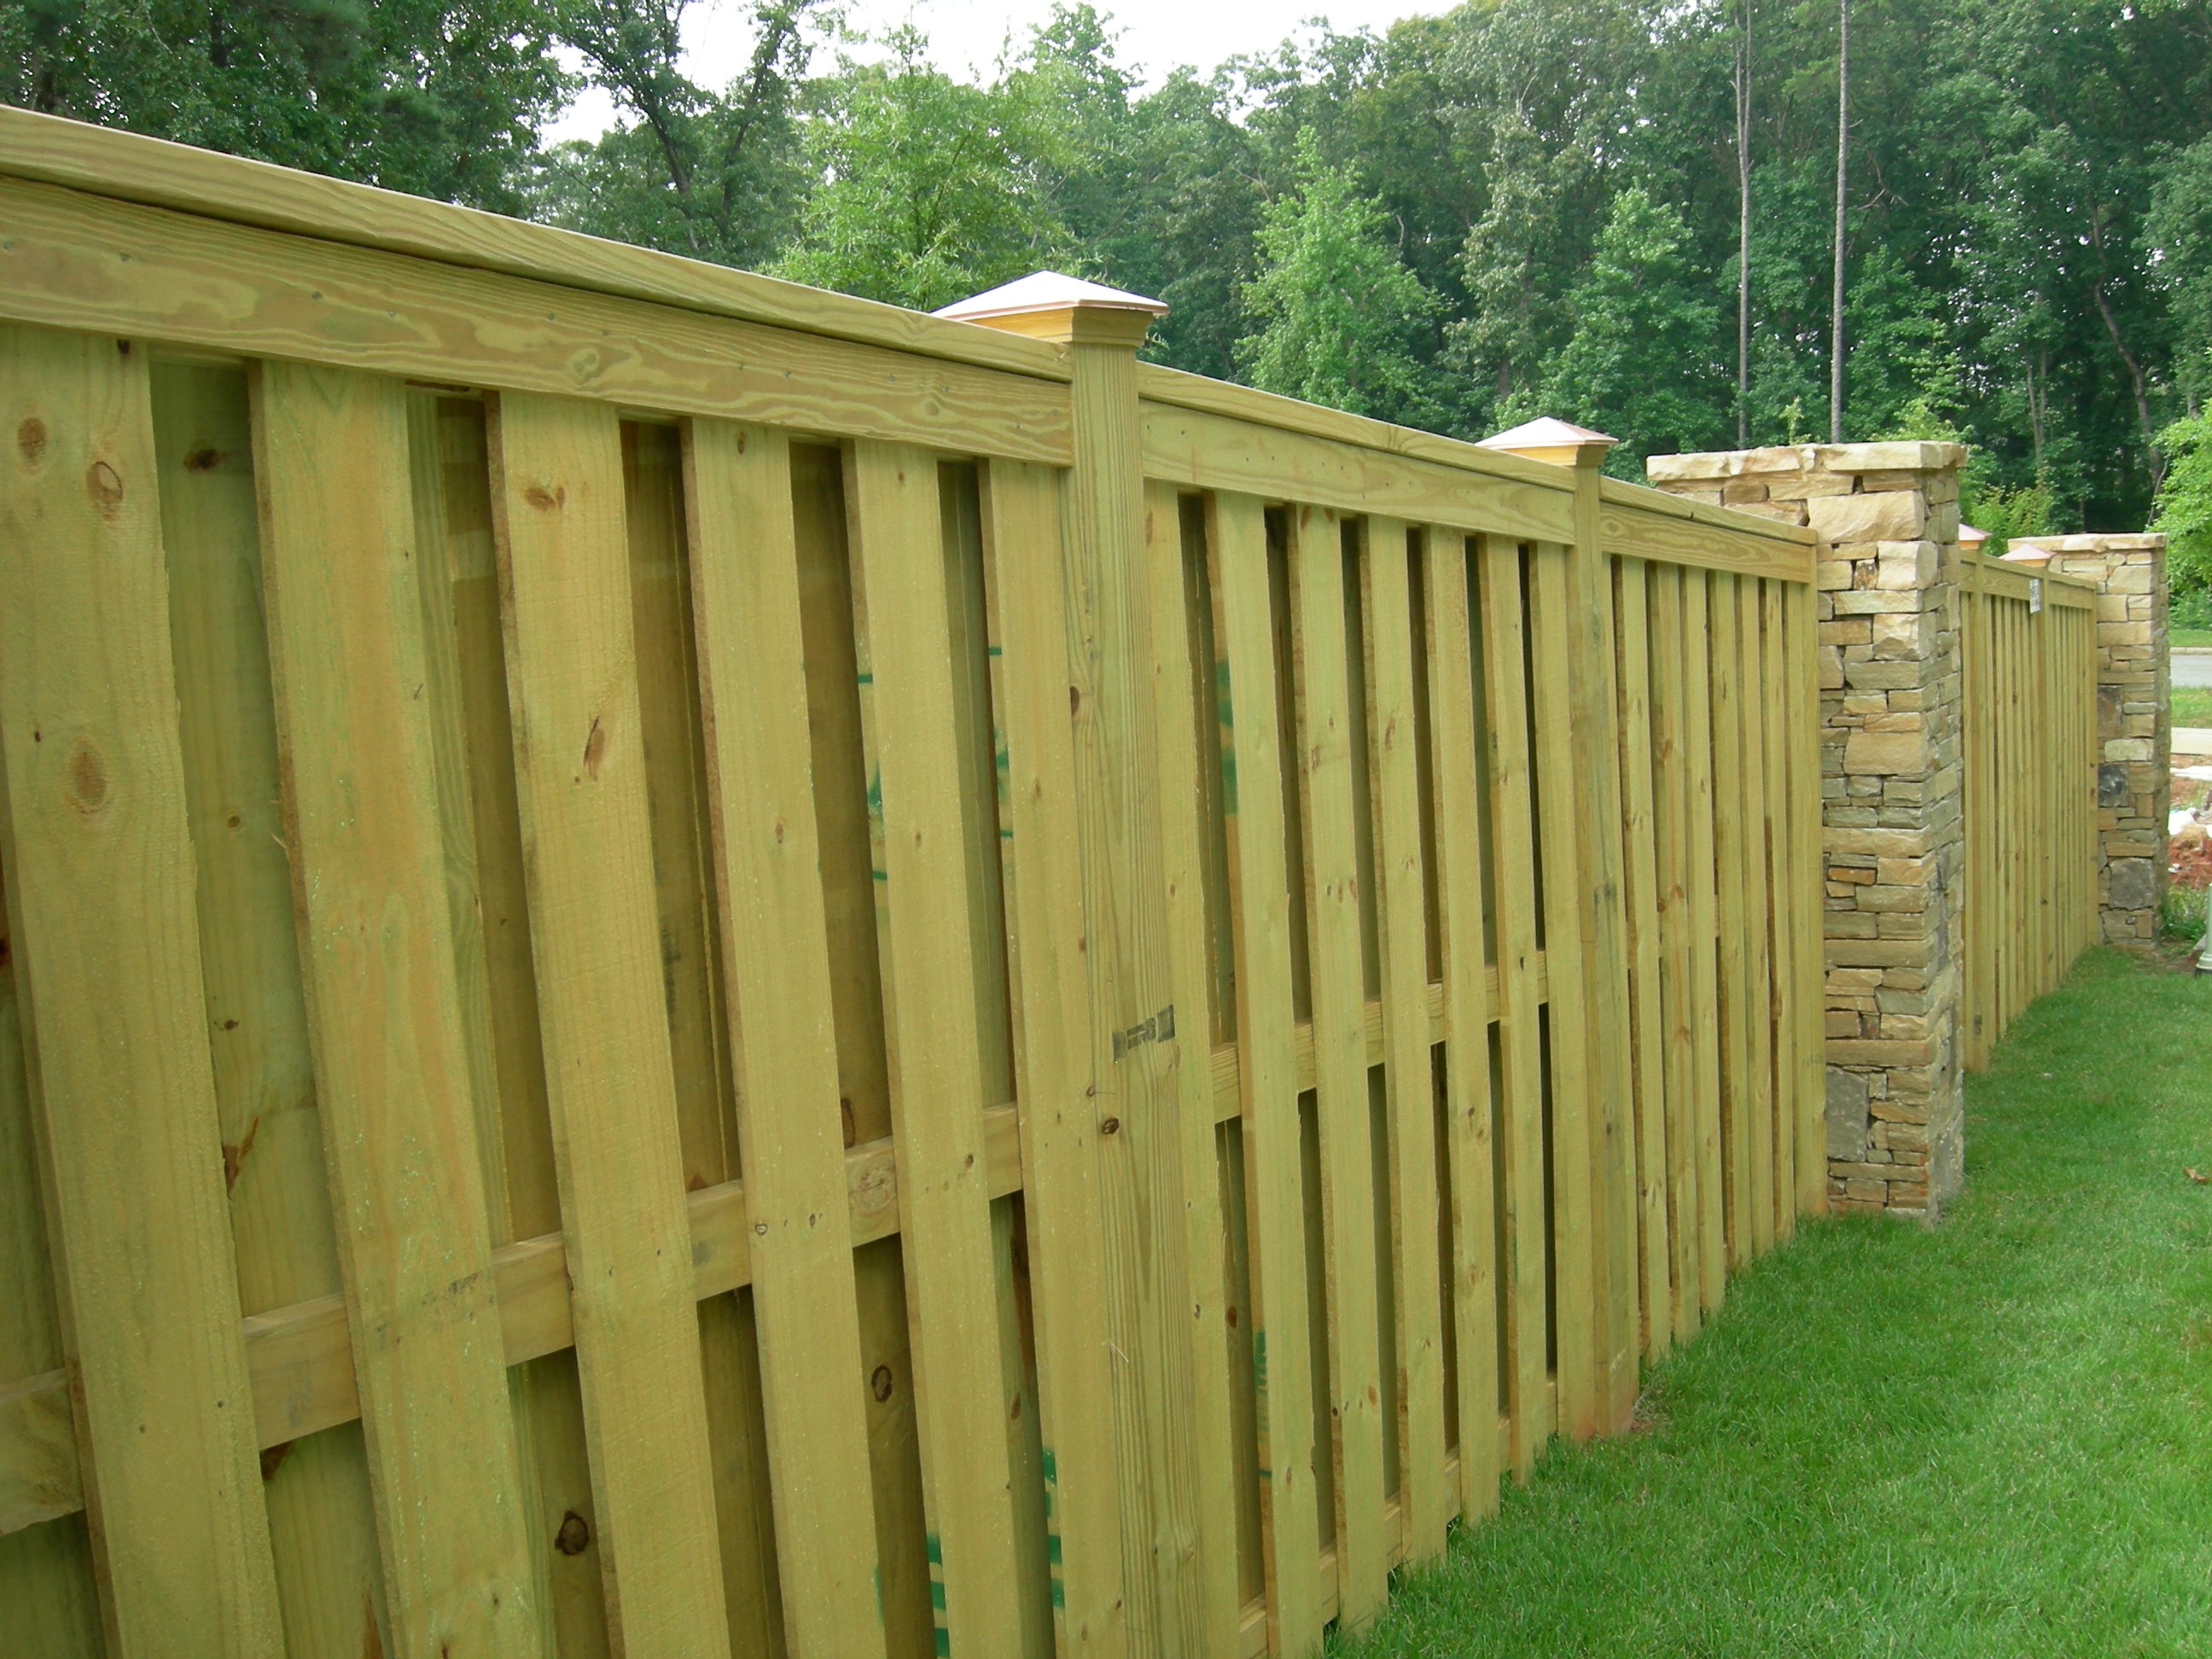 Atlanta Fence | Atlanta Fences provide Security, Privacy 